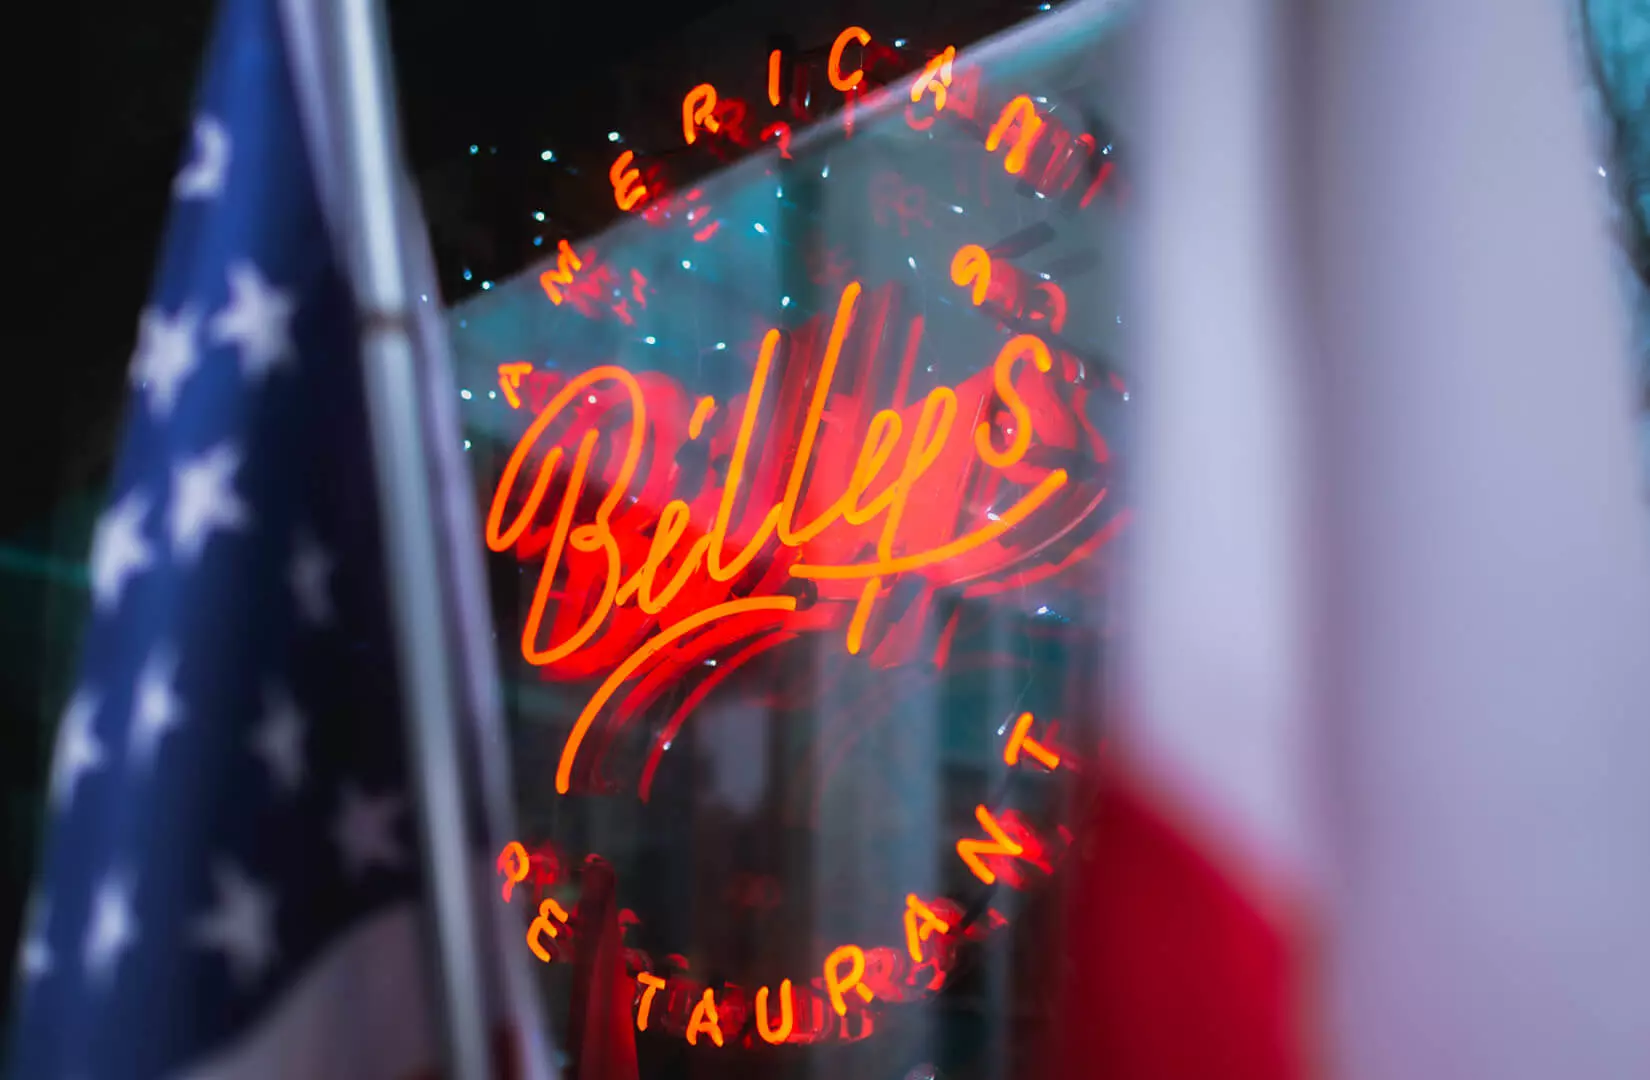 Billy's - Czerwony neon w amerykańskiej restauracji